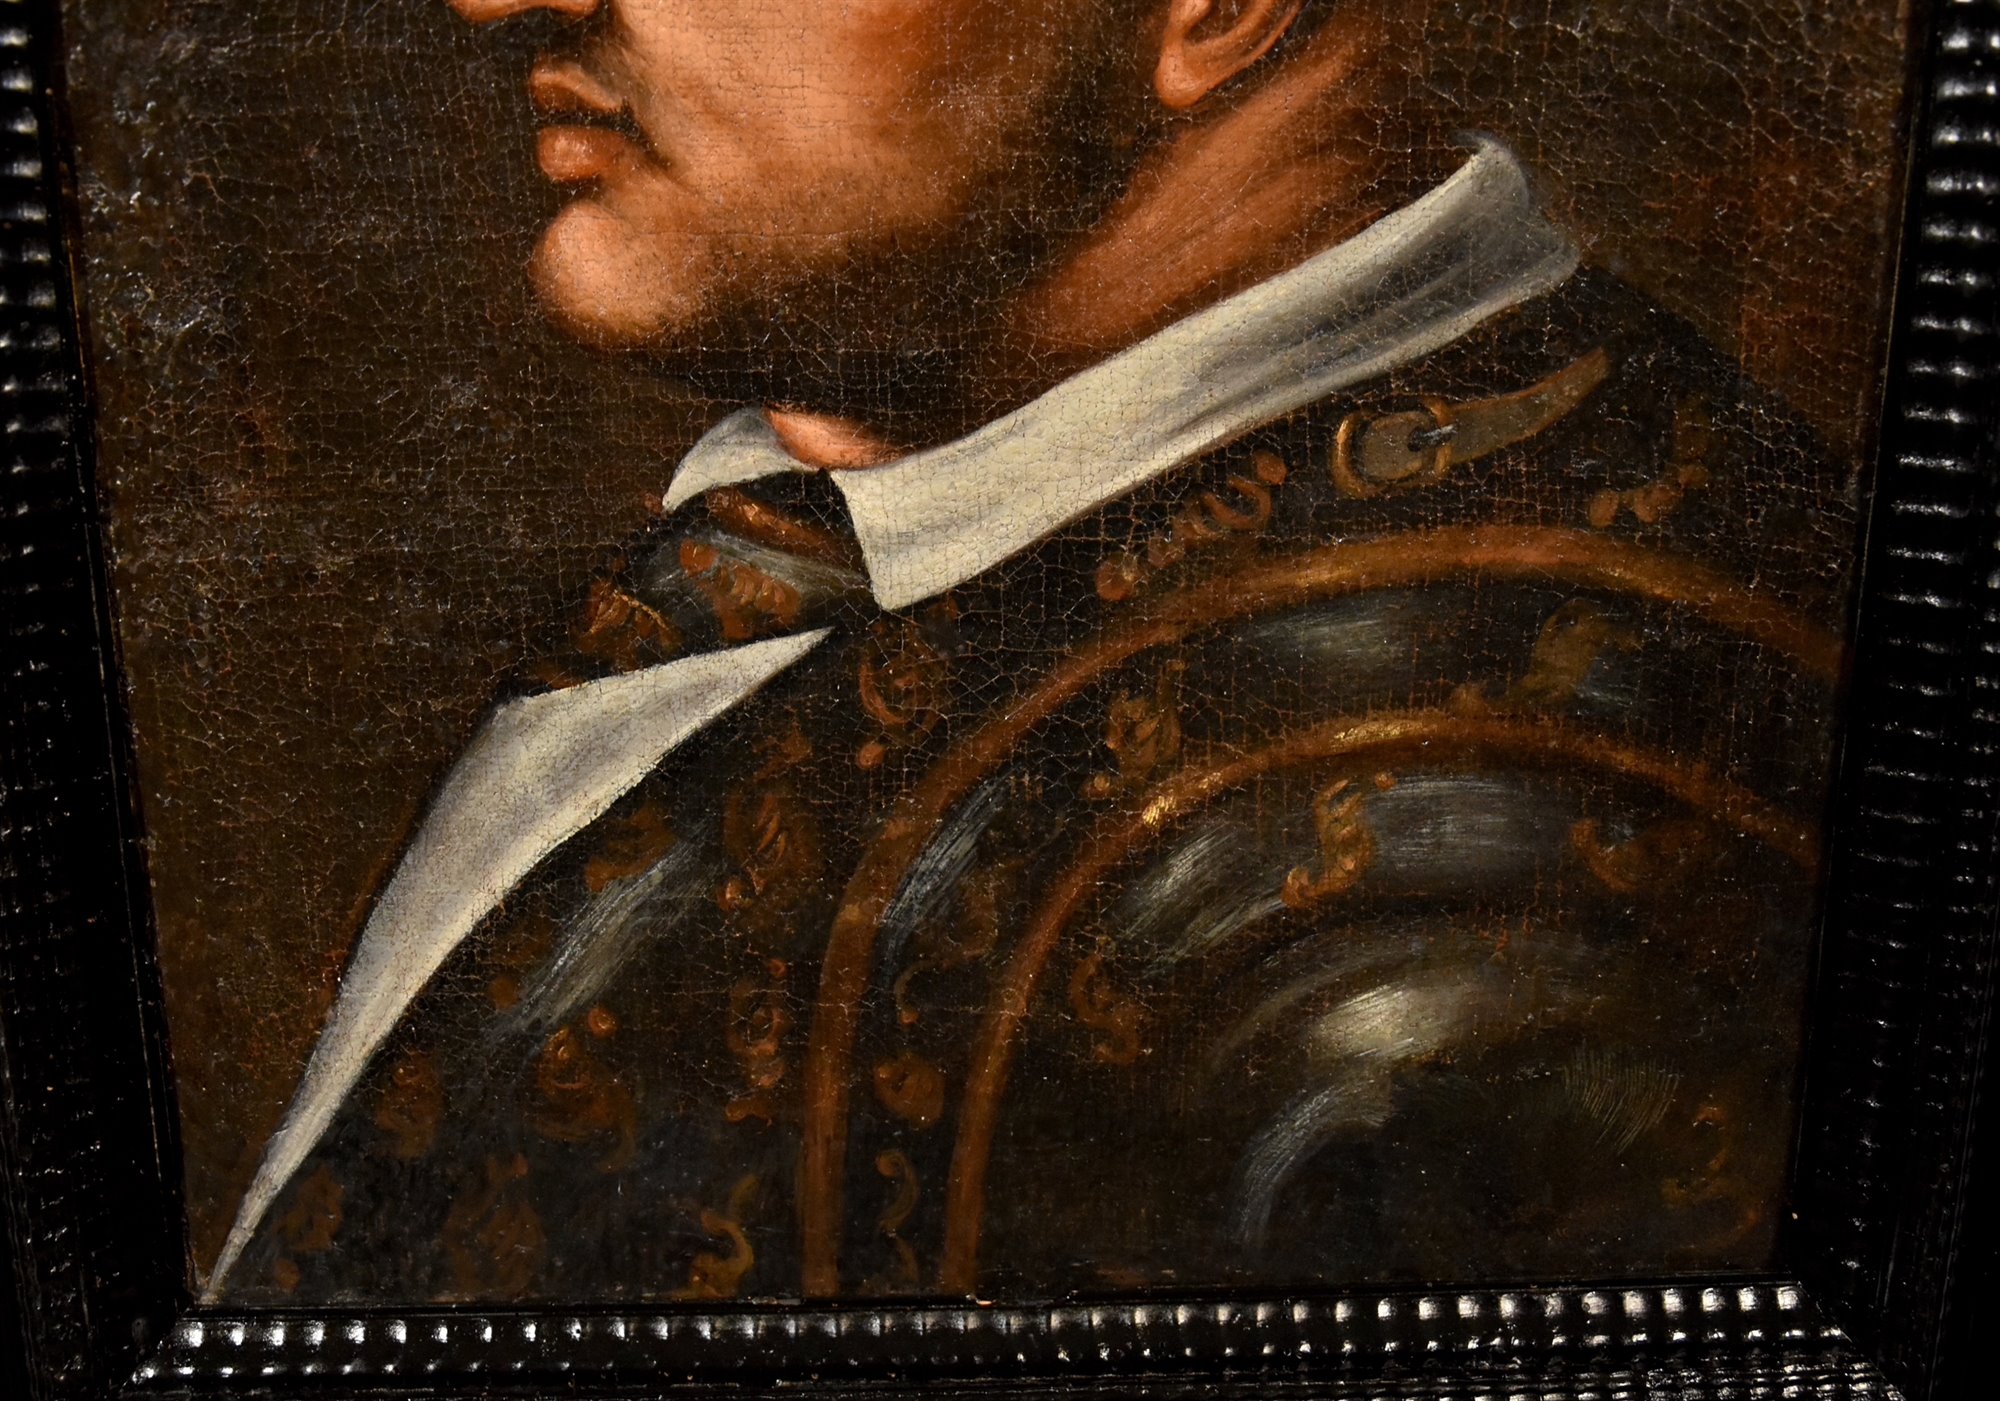 Ritratto di Niccolò Orsini, conte di Pitigliano 